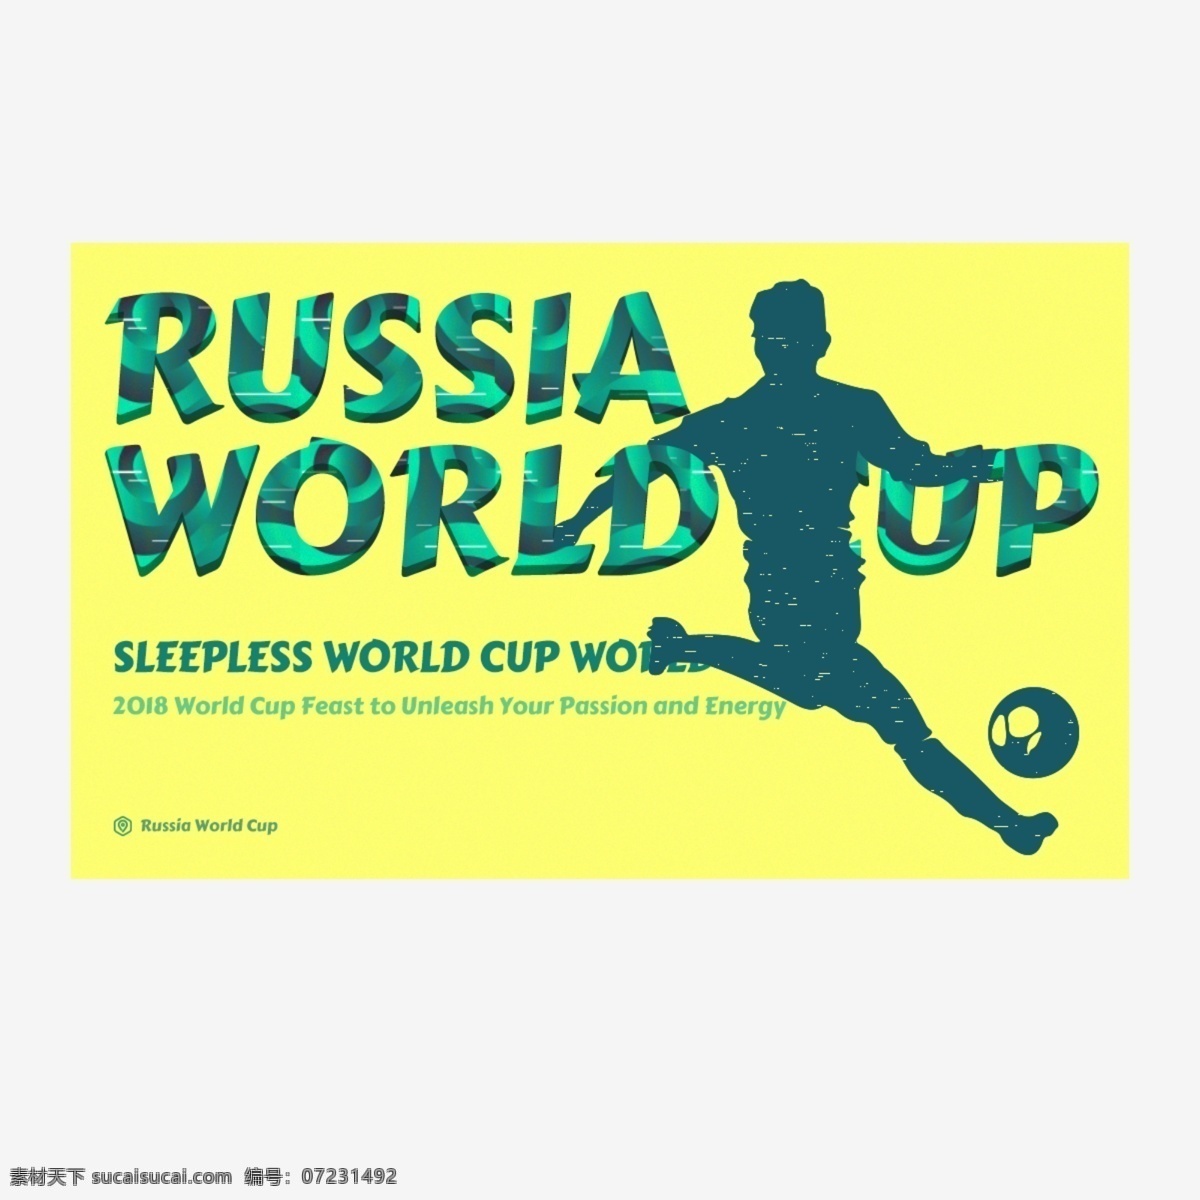 多彩 俄罗斯 世界杯 字体 俄罗斯世界杯 播放机 足球 绿色 黄色 插图 背景 海报 抽象字体 书法